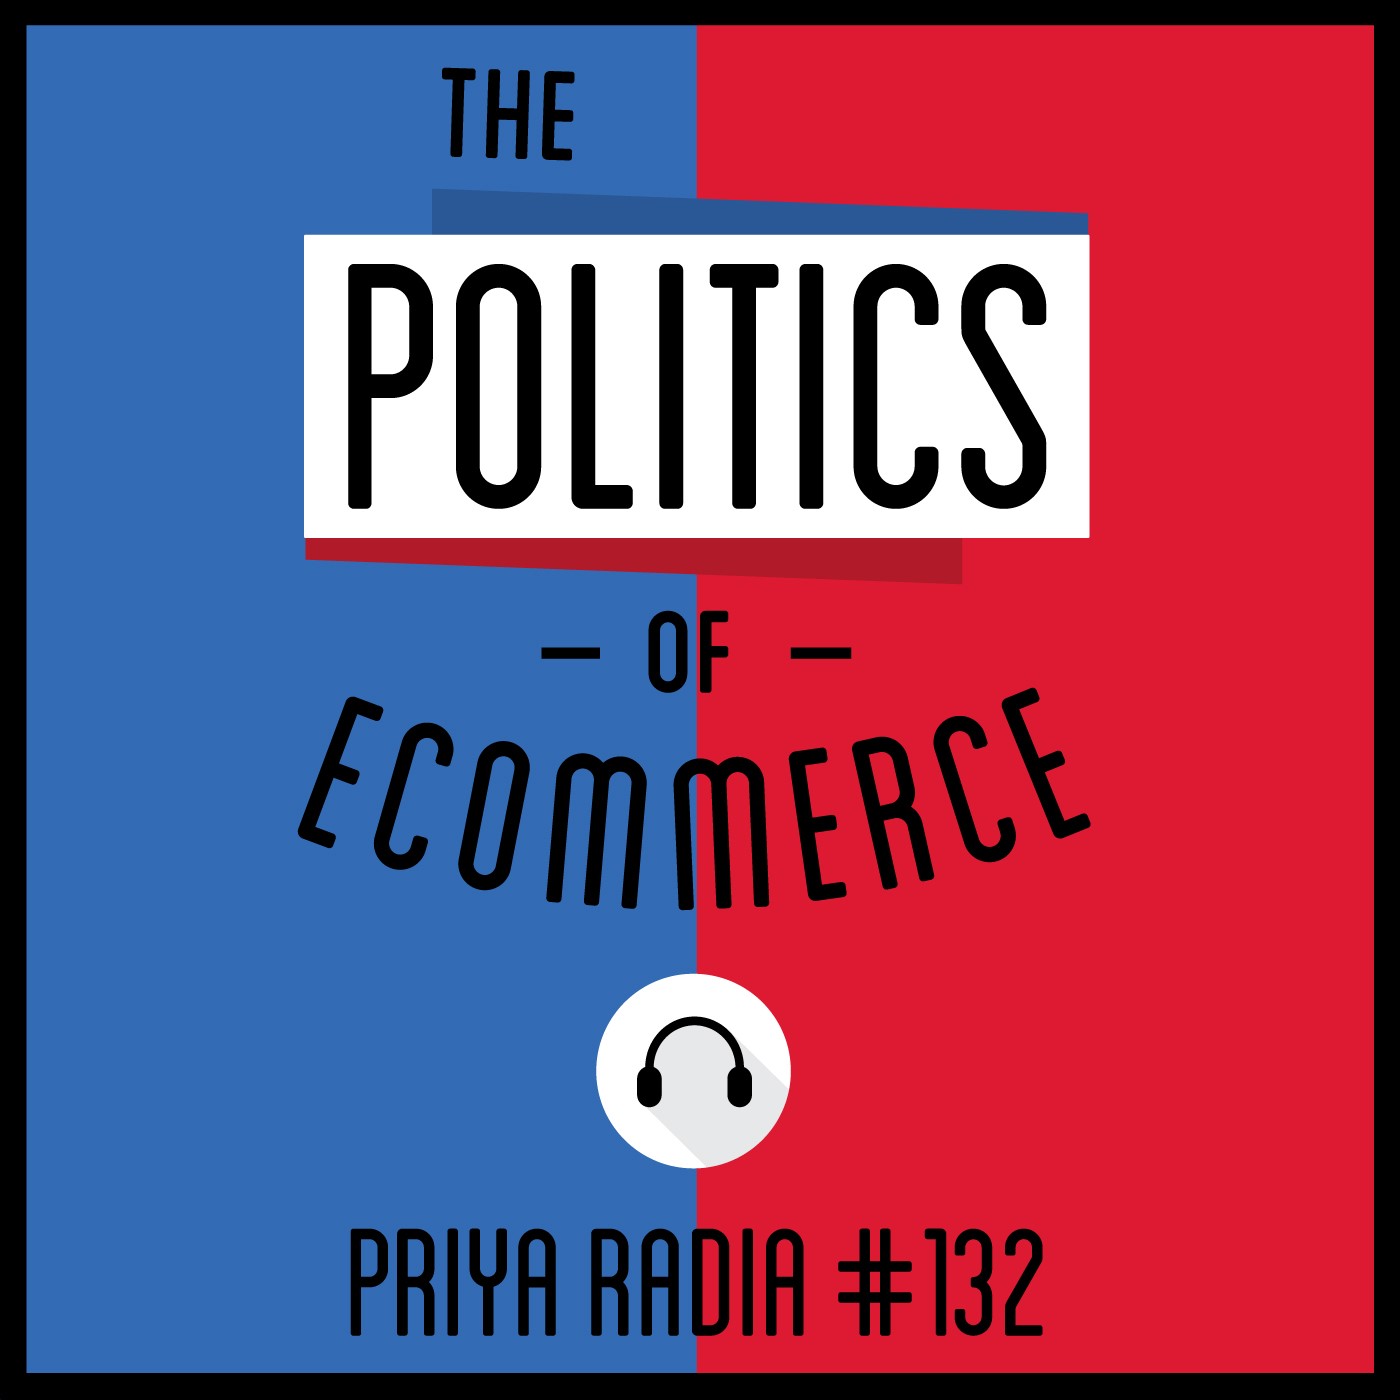 132: The Politics of Ecommerce - Priya Radia